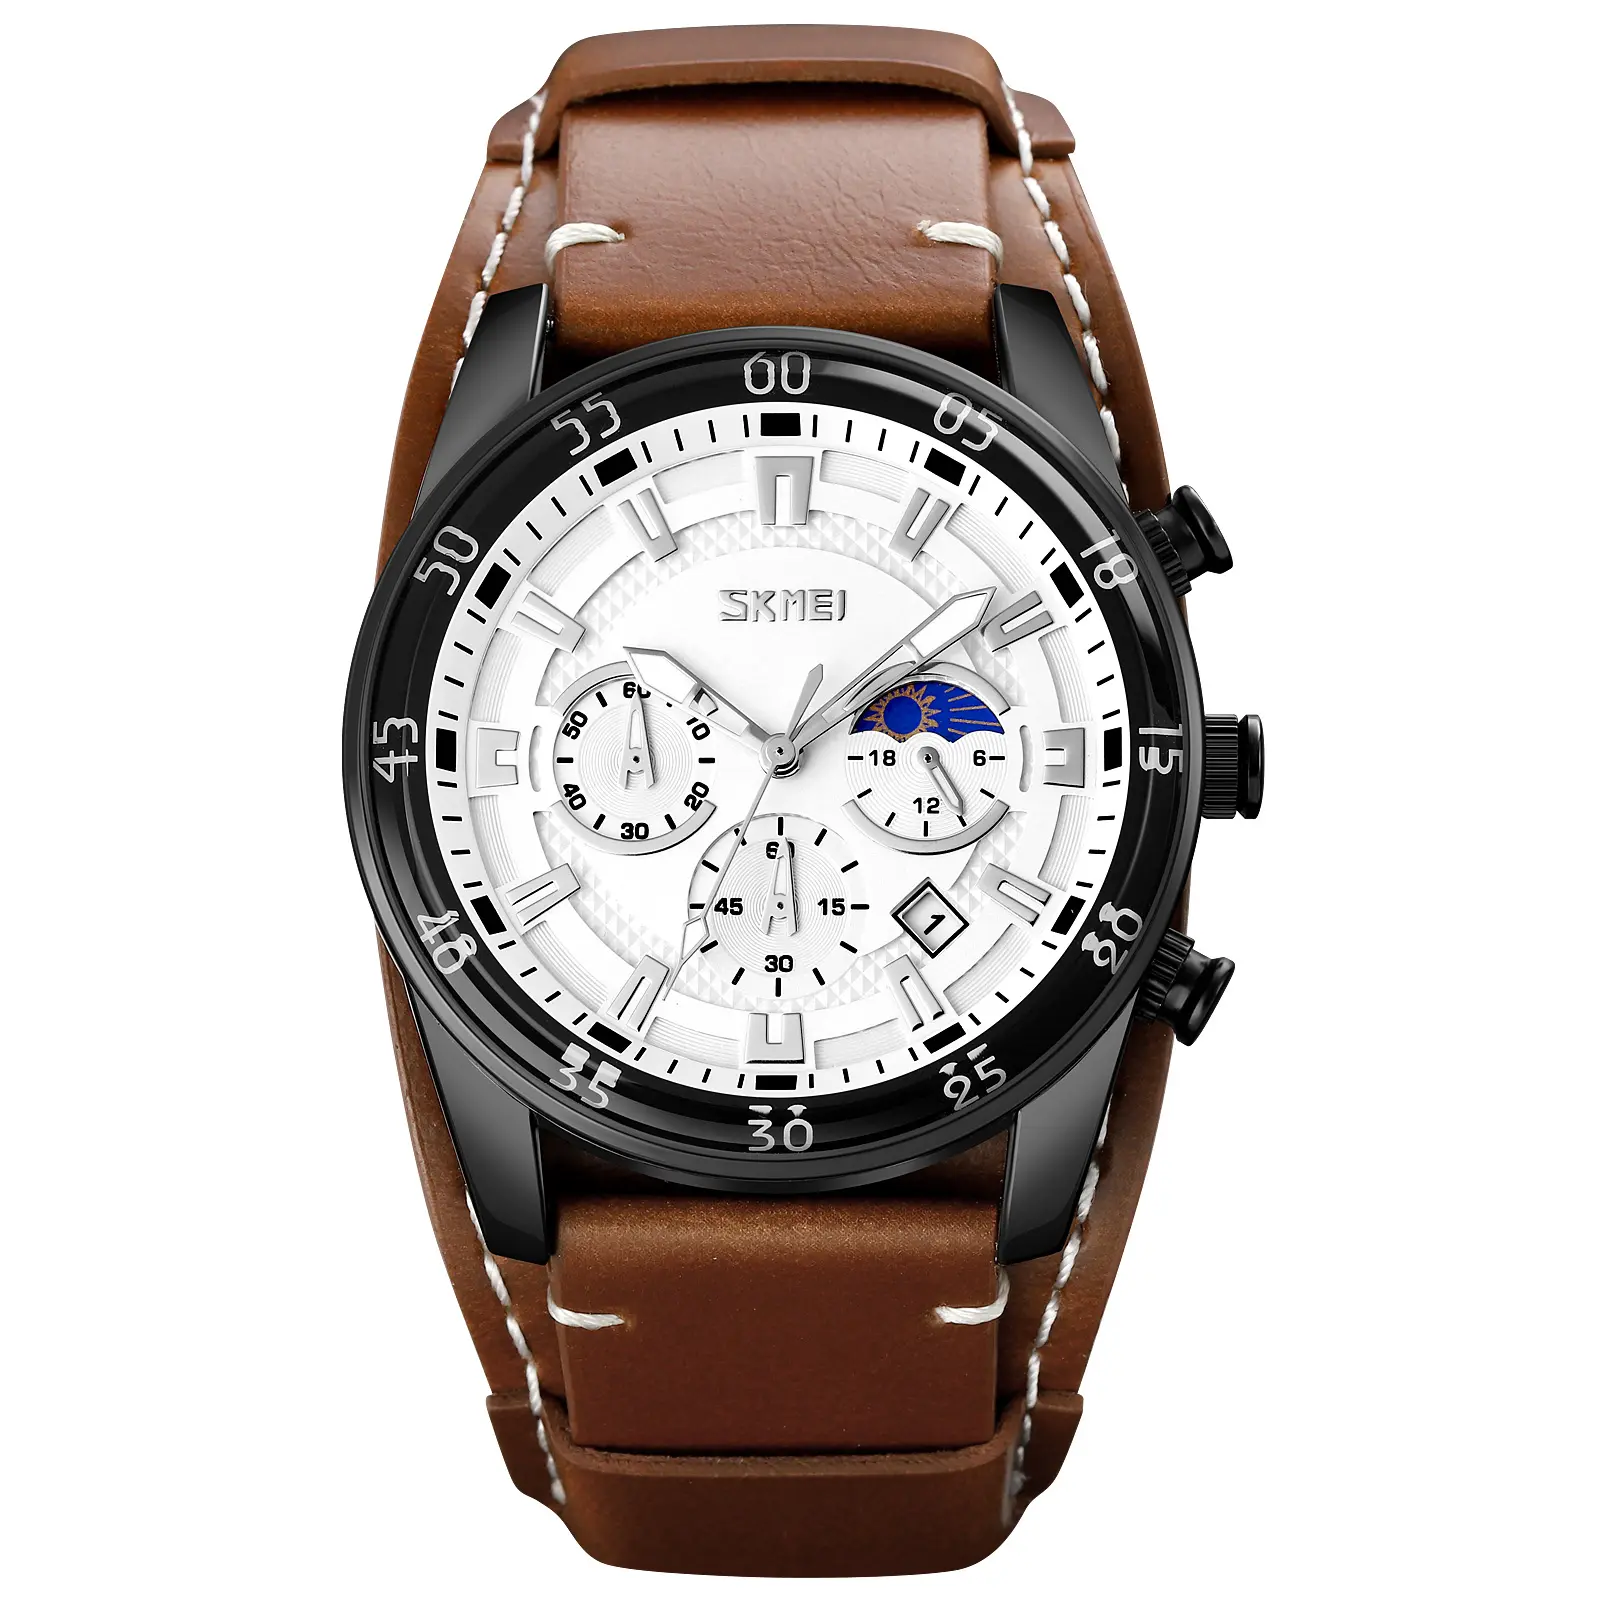 9249 relógios personalizados de luxo de couro marrom, cronógrafo relógios para homens quartzo digital atacado fornecedor marca relógios de pulso